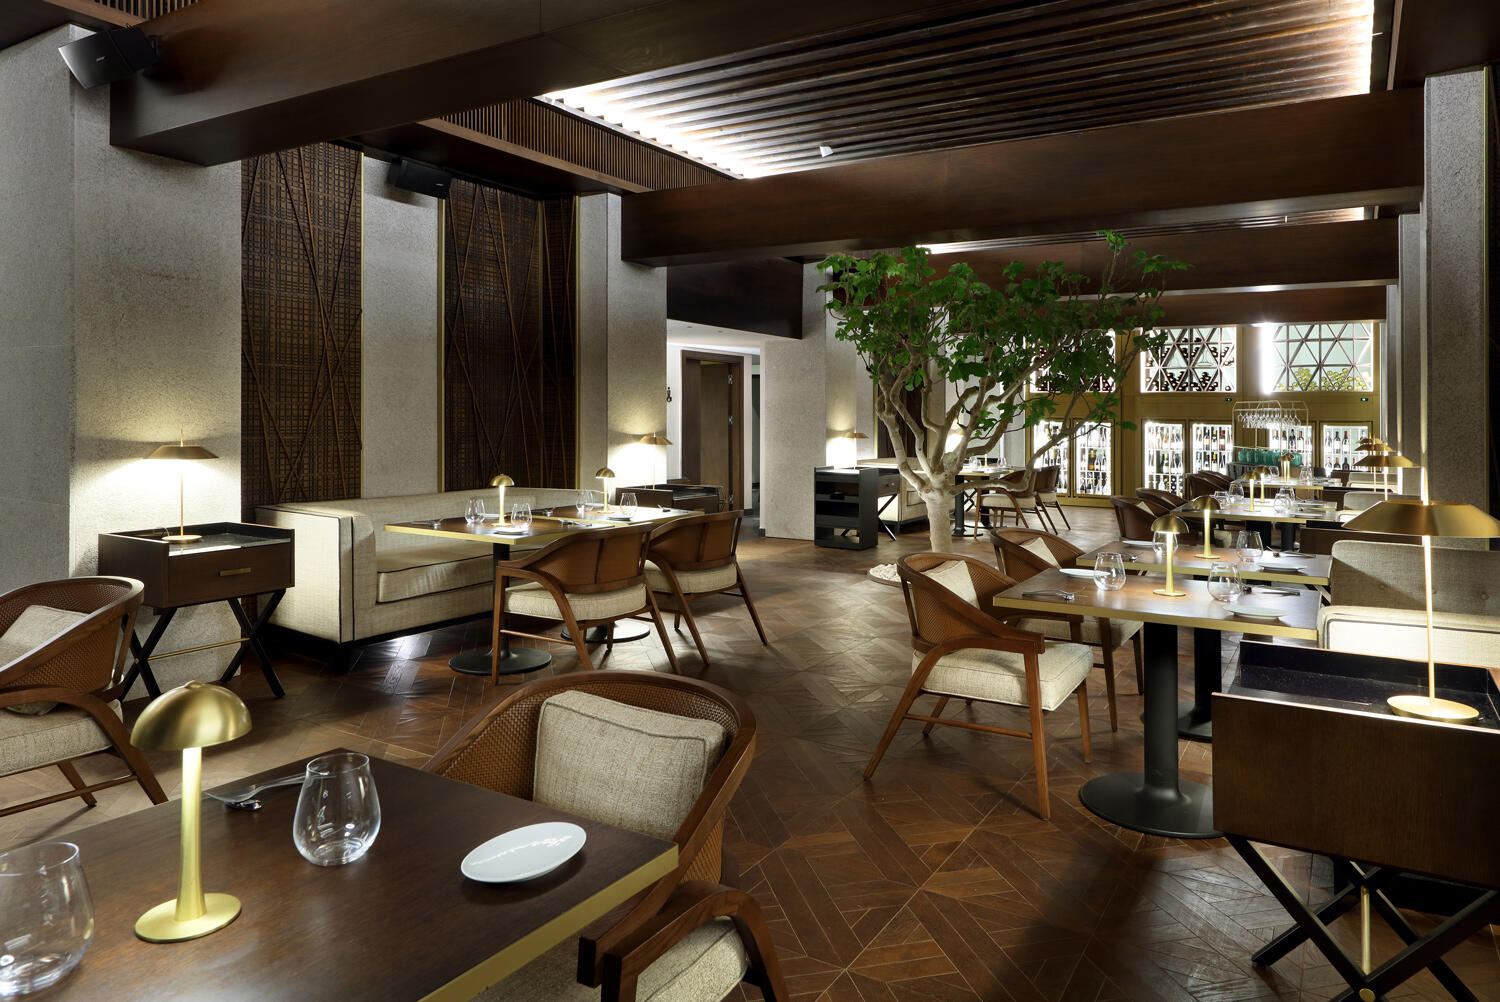 Restaurant mit dunkelbraunen Boden und Möbek und einem Olivenbraum im Bless Hotel Ibiza.